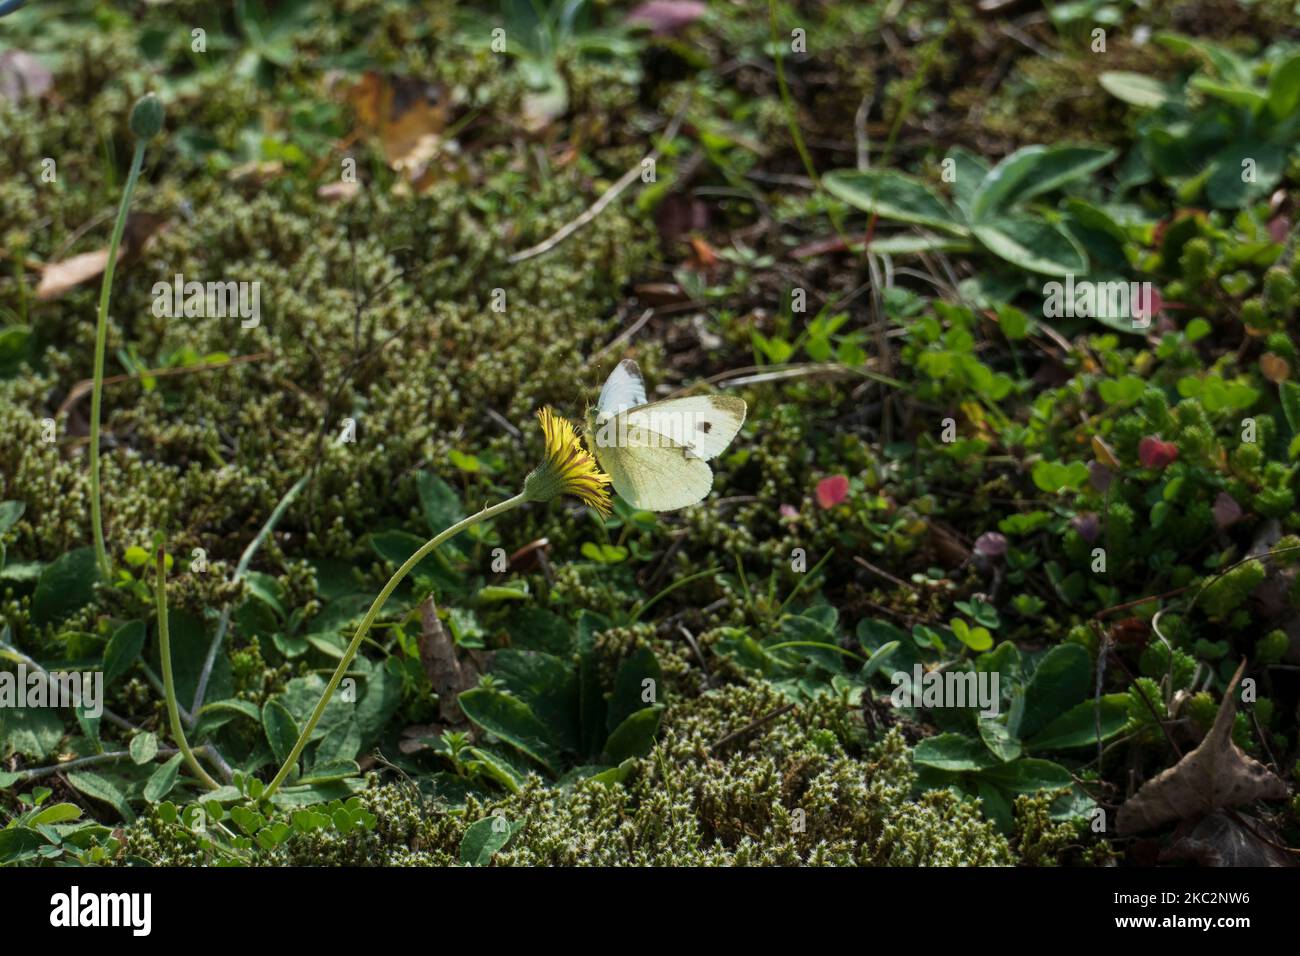 Kohlweißling falter mit braunen Flecken, auf einer Herbstlöwenzahn Blüte Foto de stock